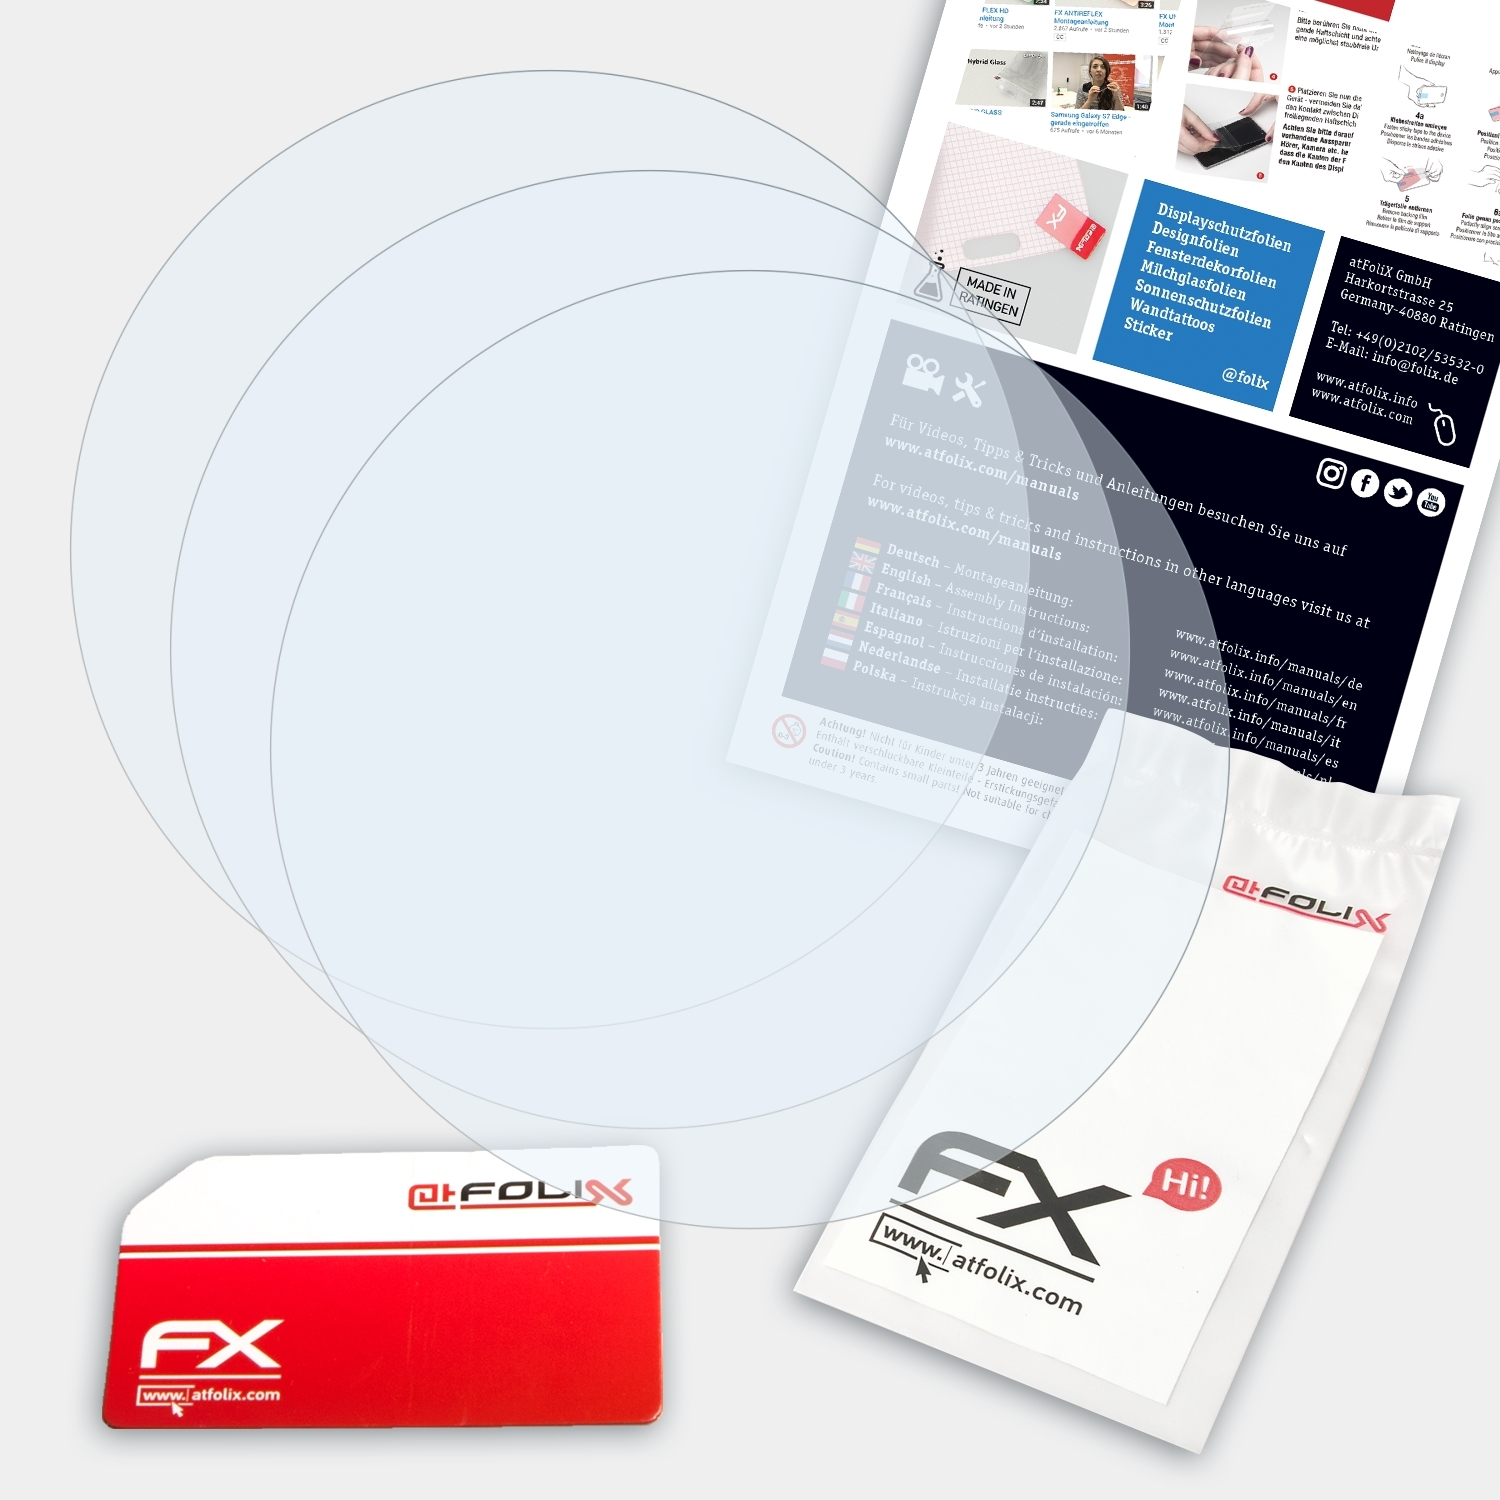 ATFOLIX 3x FX-Clear Displayschutz(für 945) Garmin Forerunner